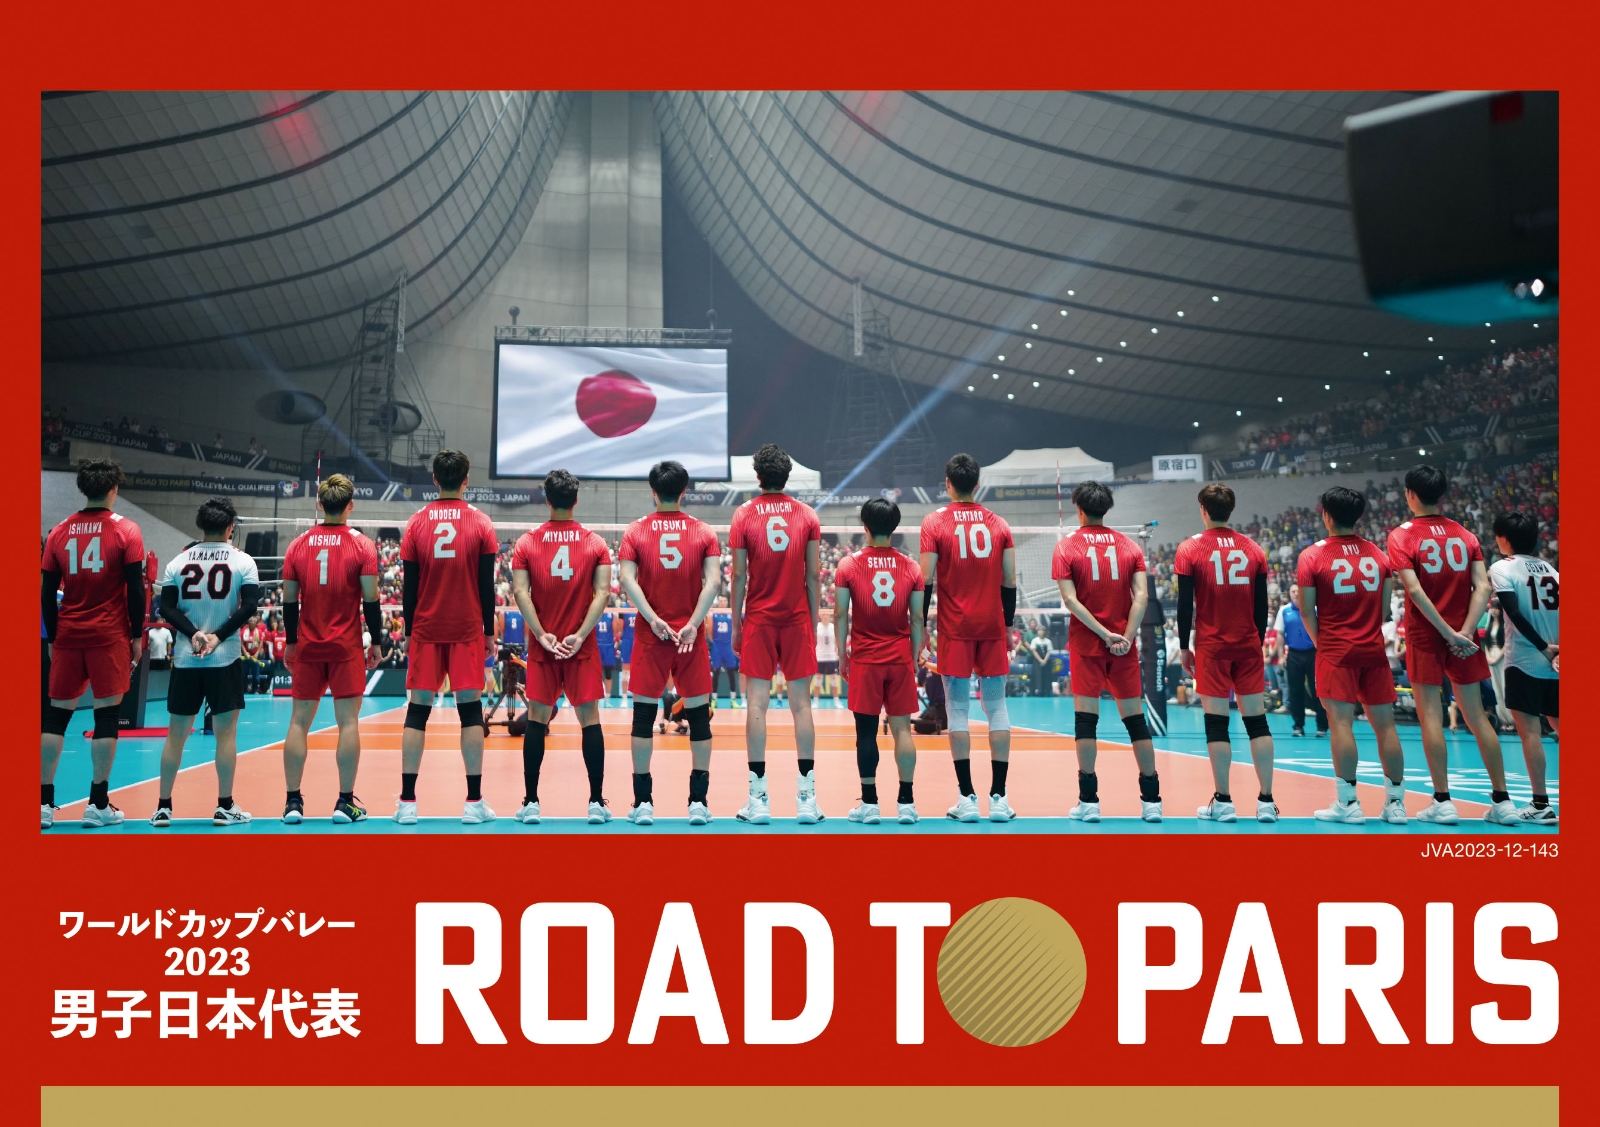 楽天ブックス: ワールドカップバレー2023 男子日本代表 ROAD TO PARIS 